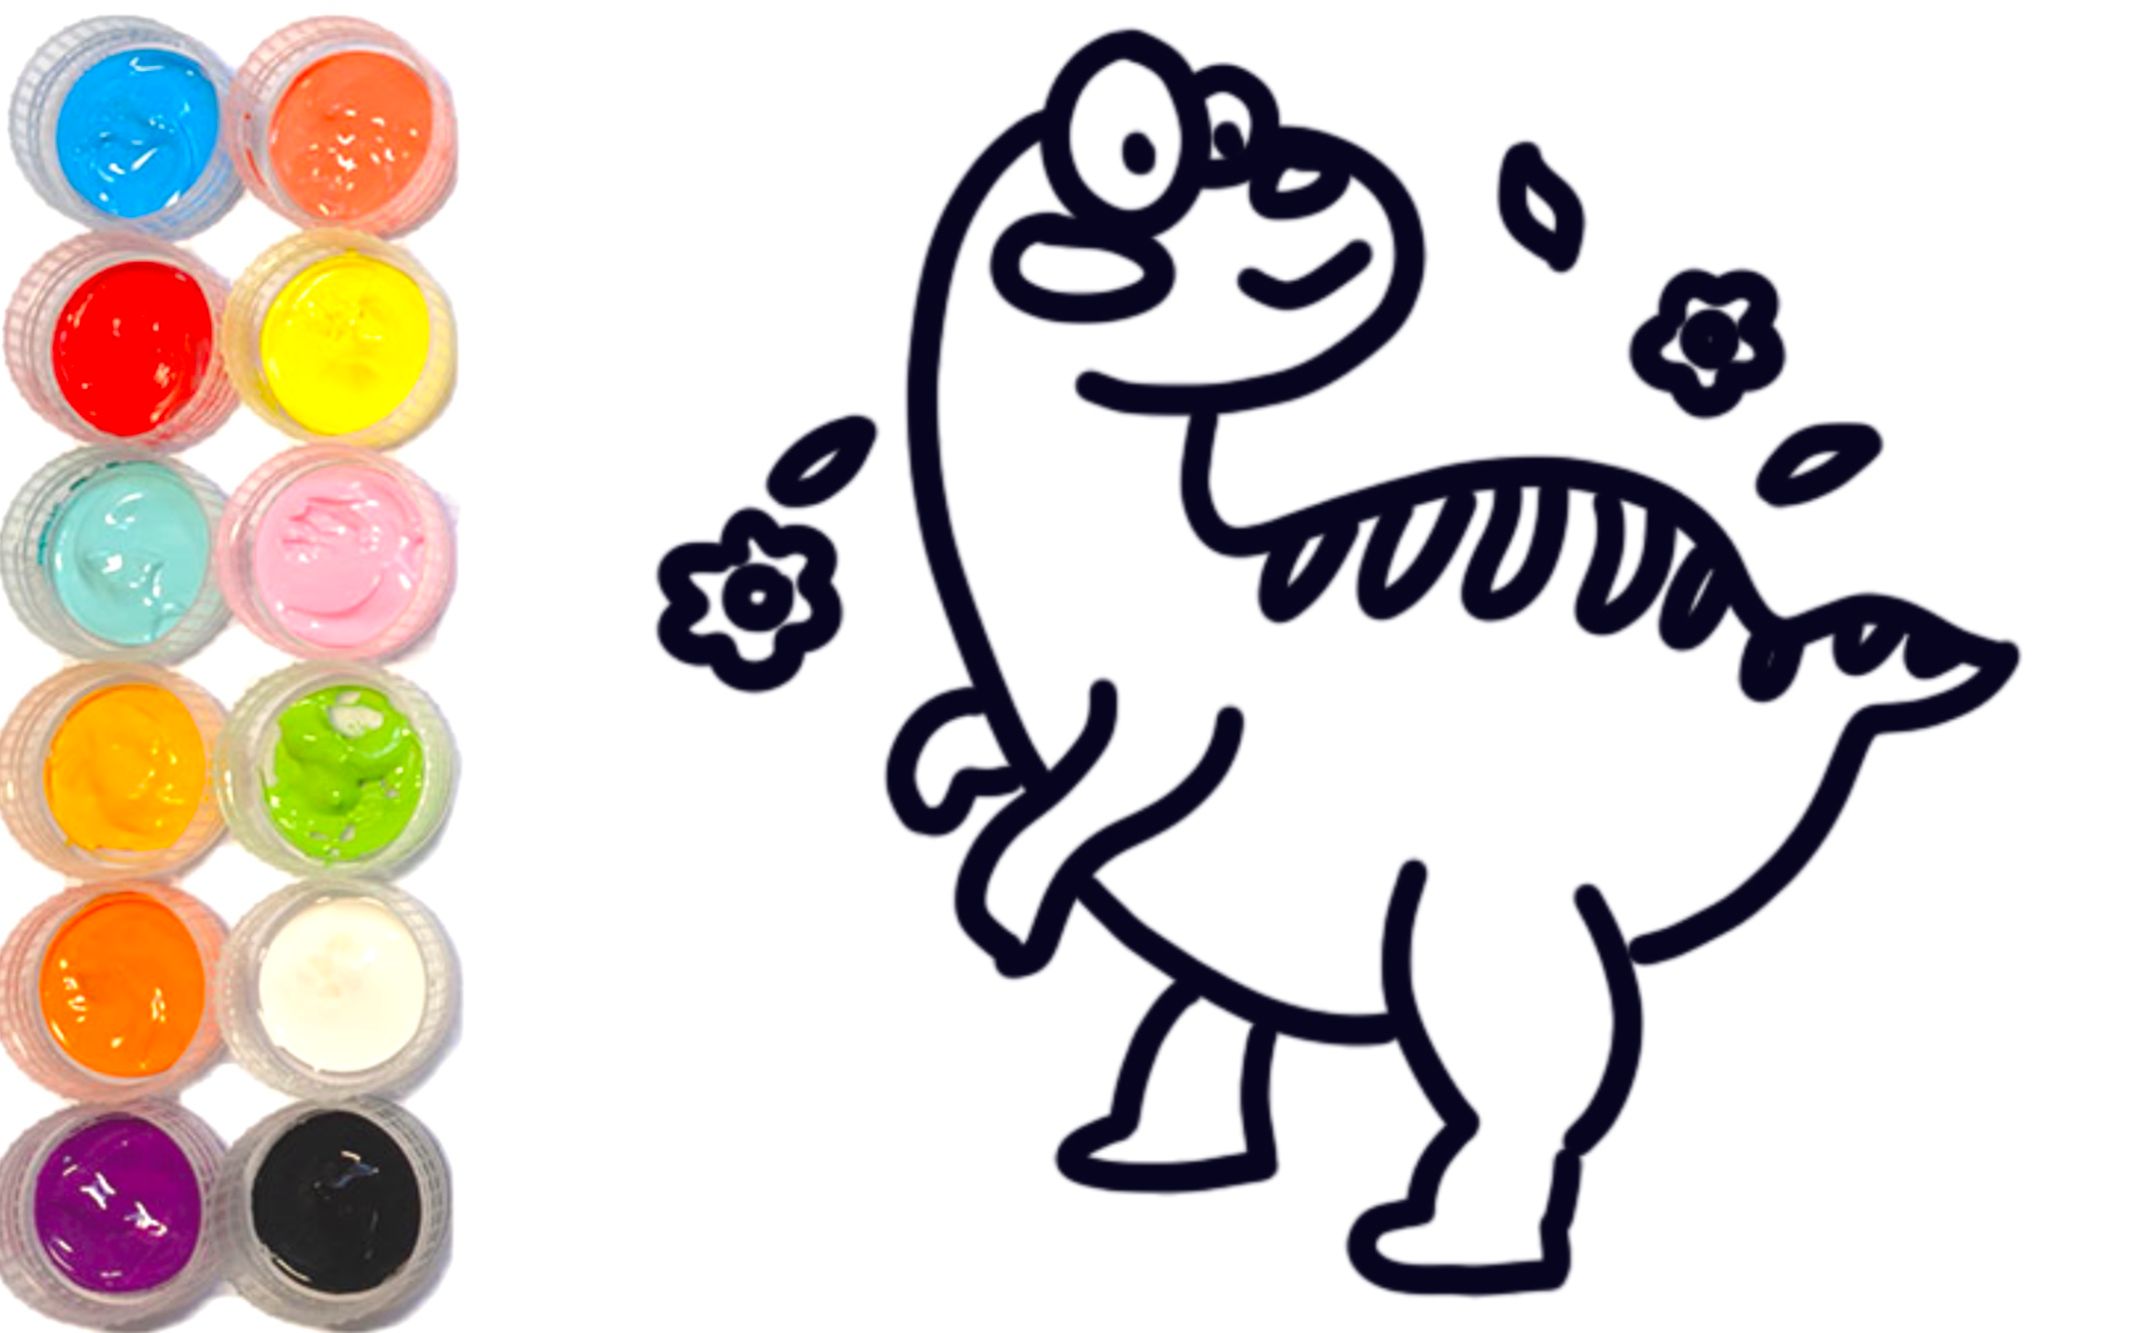 【少儿彩绘简笔画】穿越时空的小恐龙,这么多好吃好玩的,太棒啦